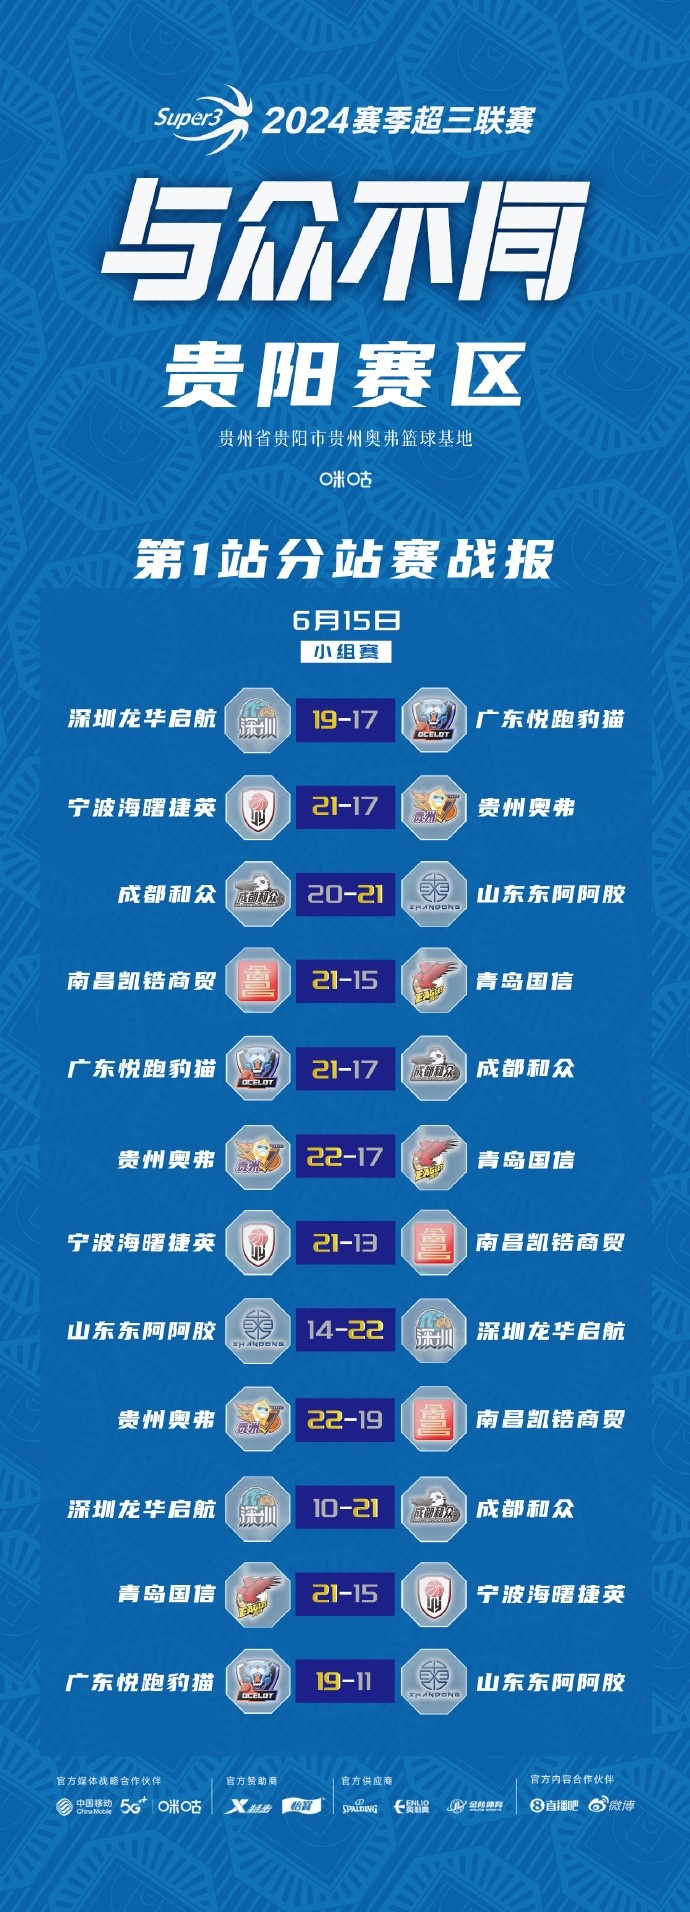 超三联赛贵阳、武汉赛区今日结束小组赛 明天进入淘汰赛阶段